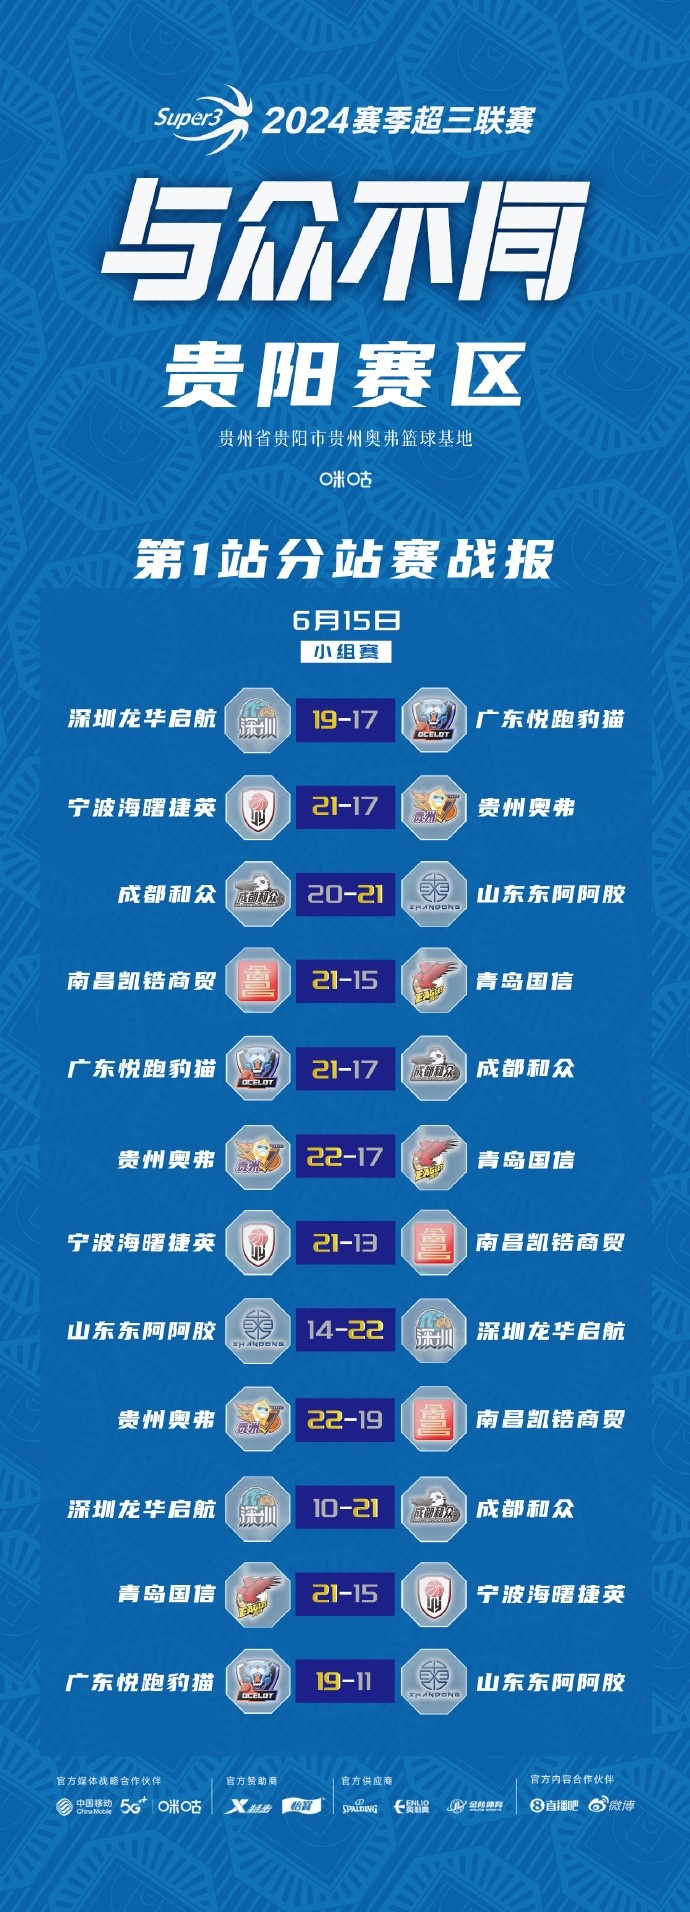 超三联赛贵阳、武汉赛区今日结束小组赛 明天进入淘汰赛阶段